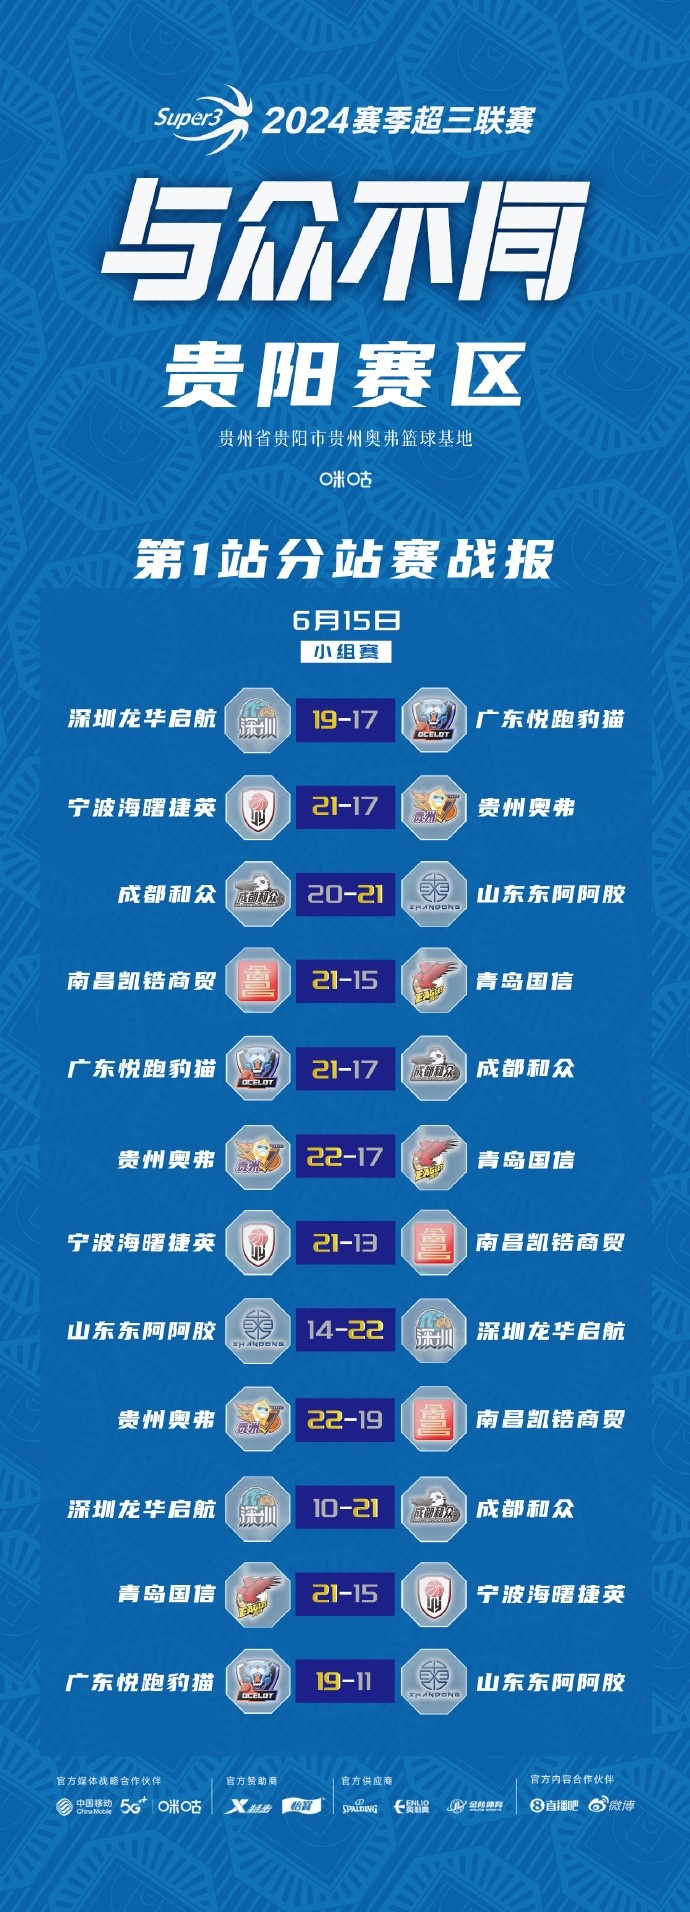 超三联赛贵阳、武汉赛区今日结束小组赛 明天进入淘汰赛阶段